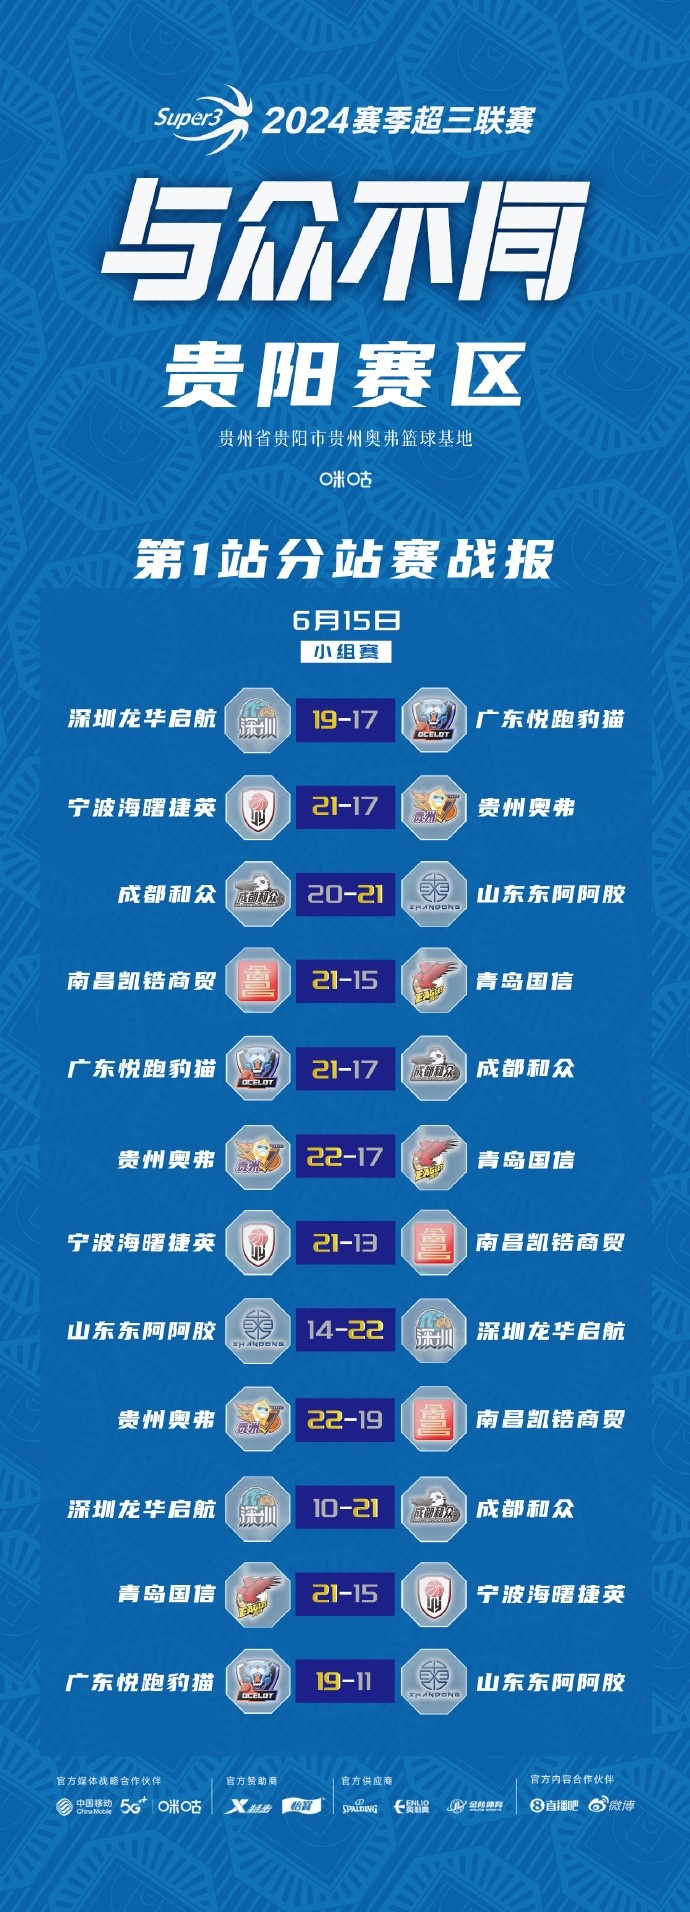 超三联赛贵阳、武汉赛区今日结束小组赛 明天进入淘汰赛阶段